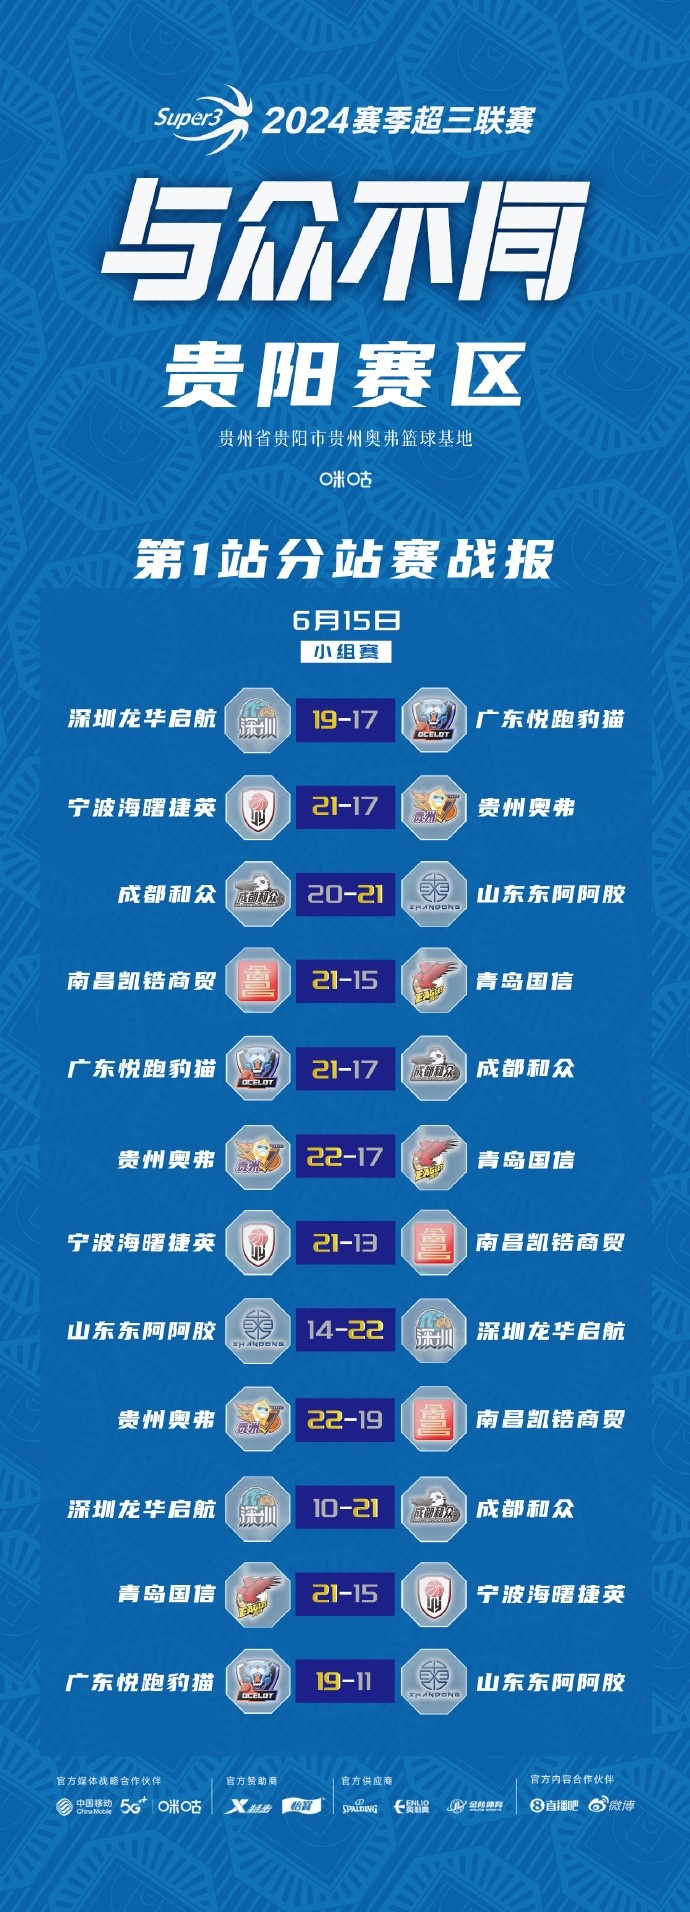 超三联赛贵阳、武汉赛区今日结束小组赛 明天进入淘汰赛阶段